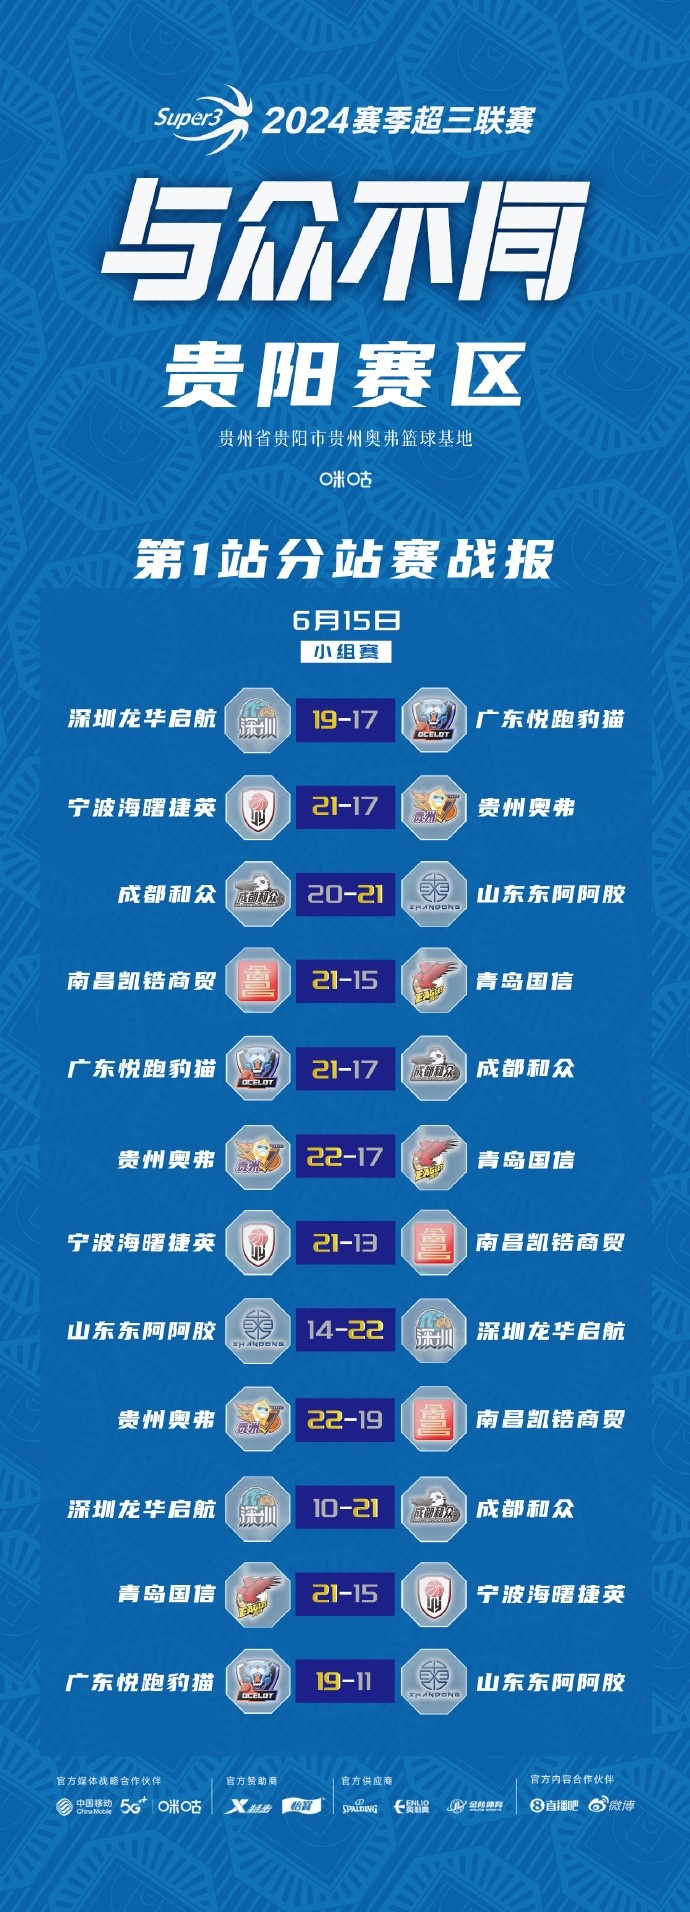 超三联赛贵阳、武汉赛区今日结束小组赛 明天进入淘汰赛阶段